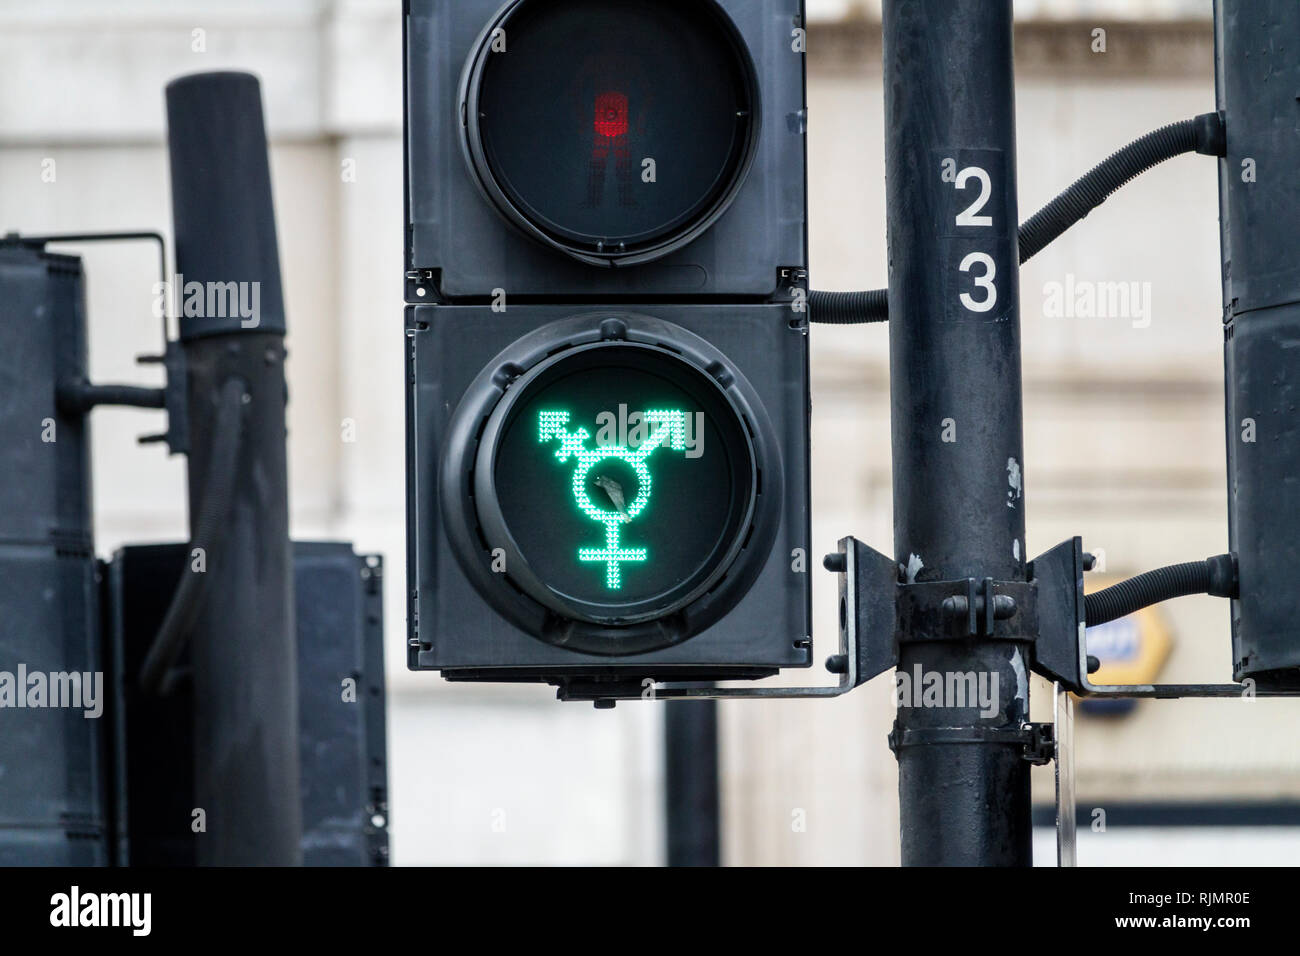 Royaume-Uni Grande-Bretagne Angleterre Londres Trafalgar Square passage piéton Symbole de genre clair Transports de Londres gay fierté léger transg Banque D'Images